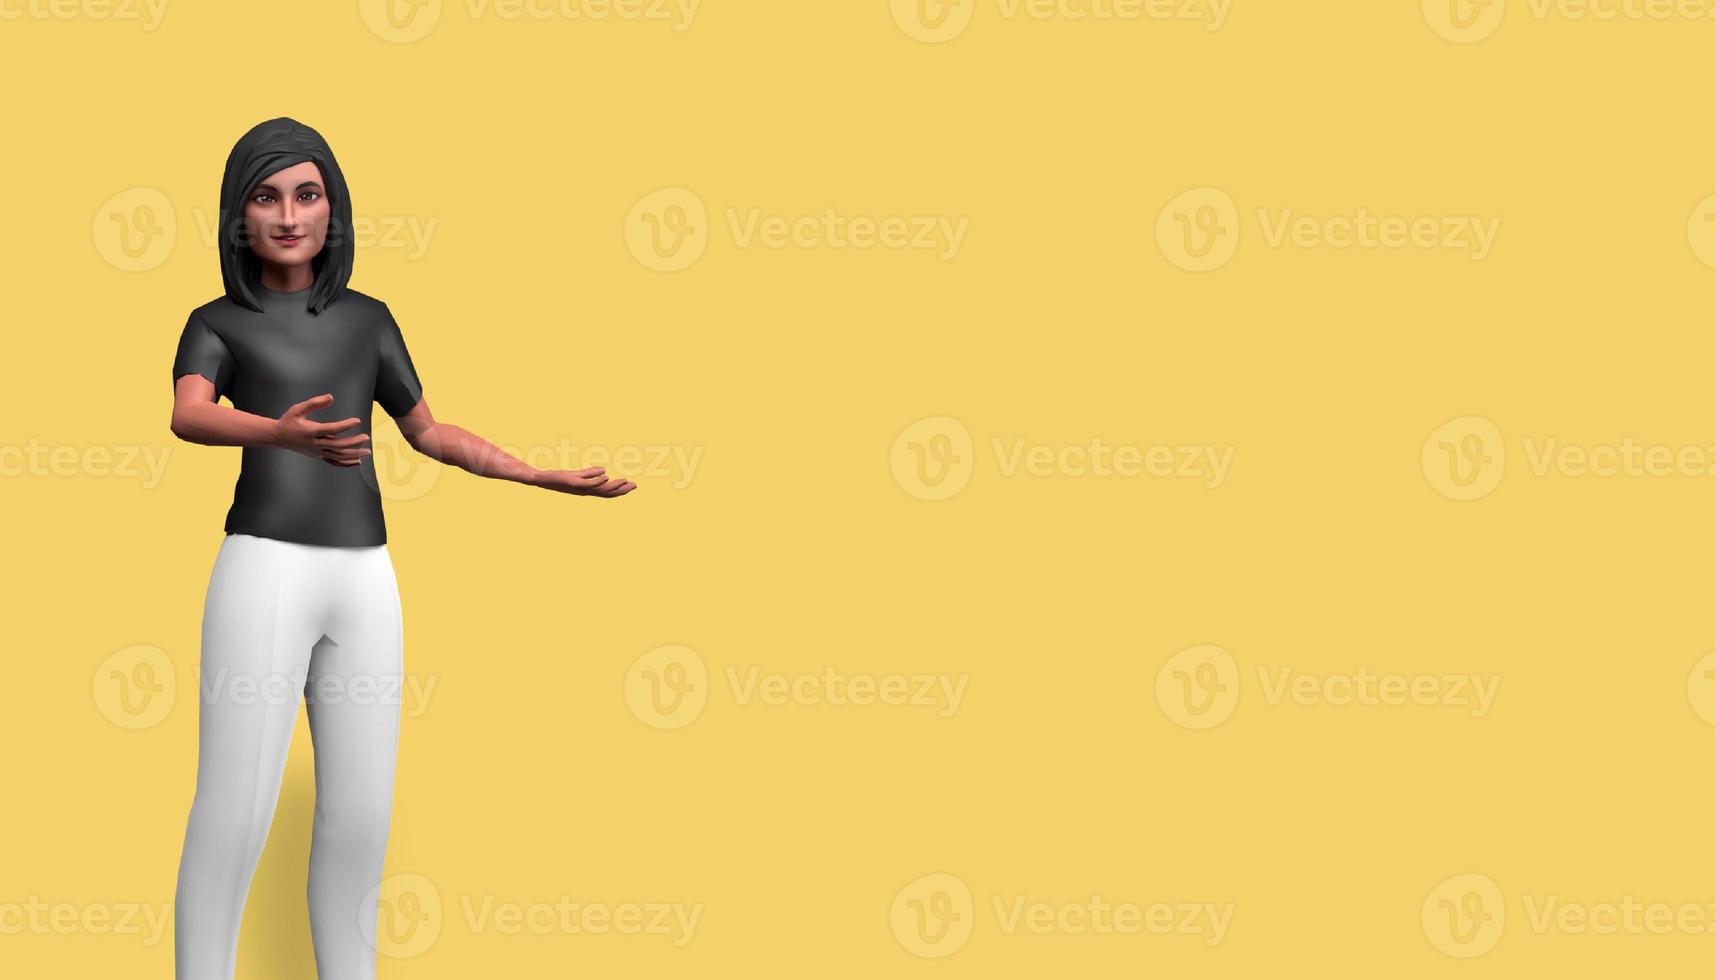 Personnage de dessin animé d'illustration 3d, belle fille pointant vers la droite, heureuse et souriante, debout devant un fond jaune photo